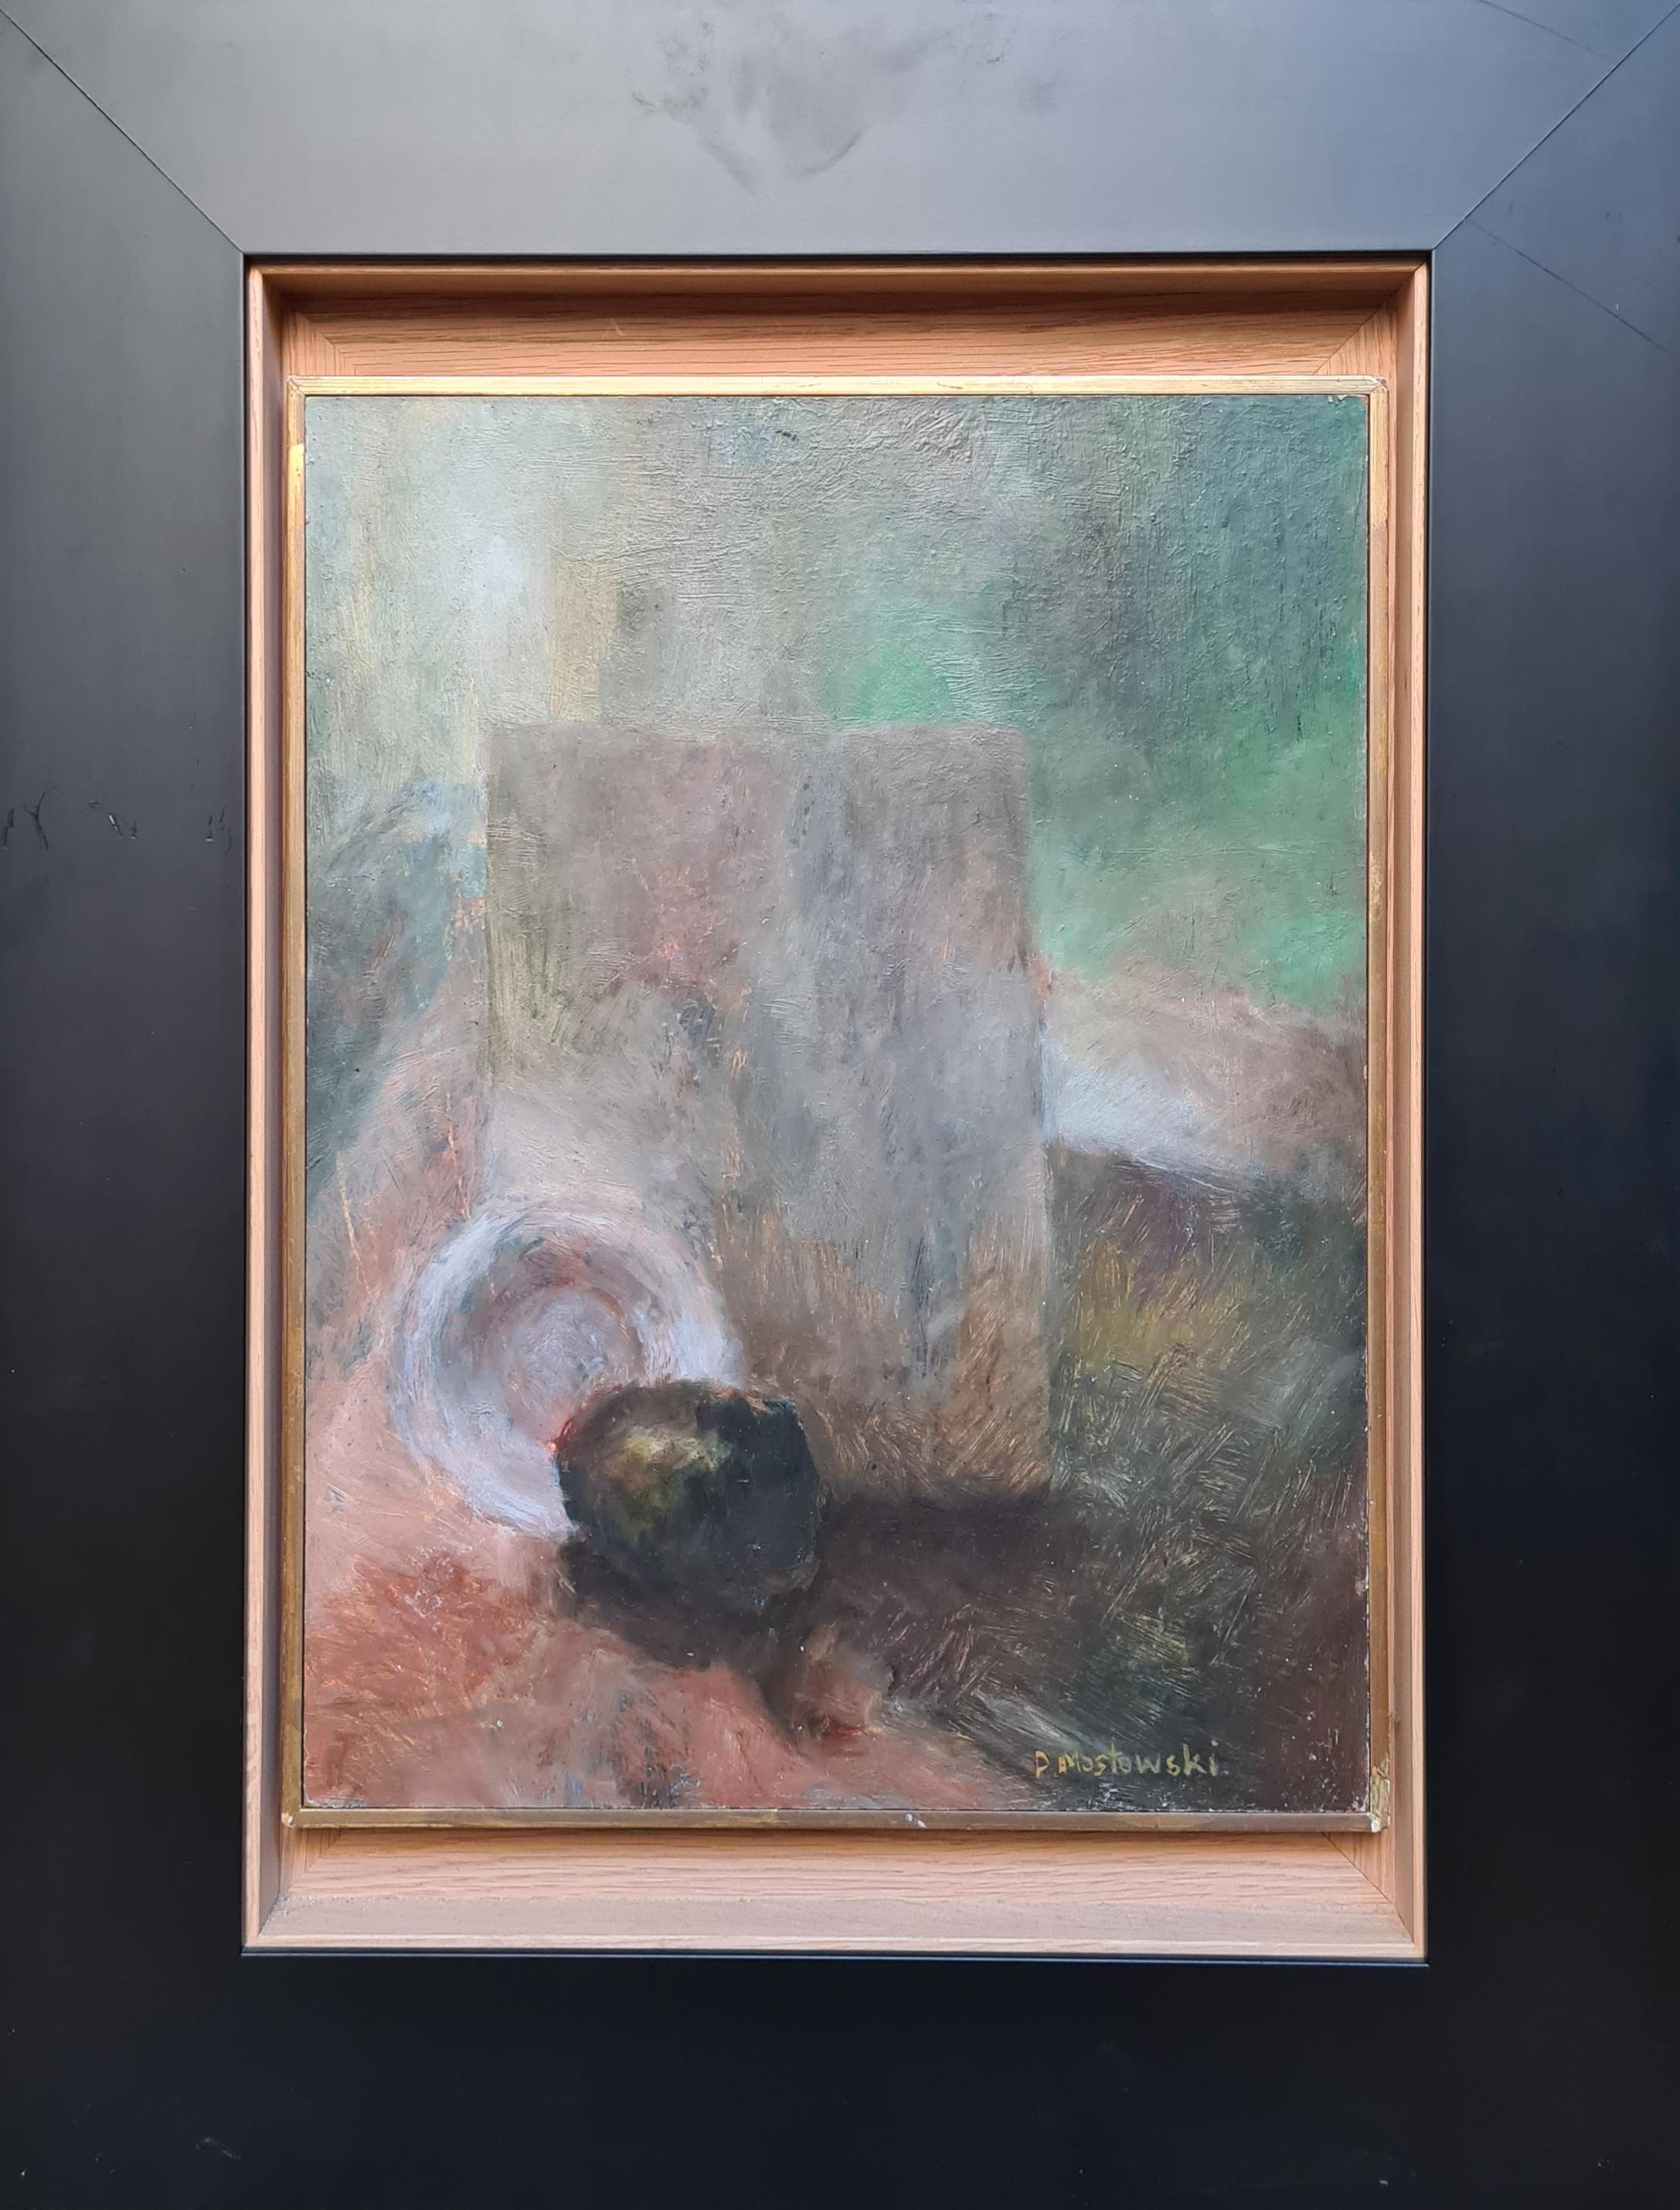 Post-Impressionistisches Stillleben in Grün – Painting von P Mostowski